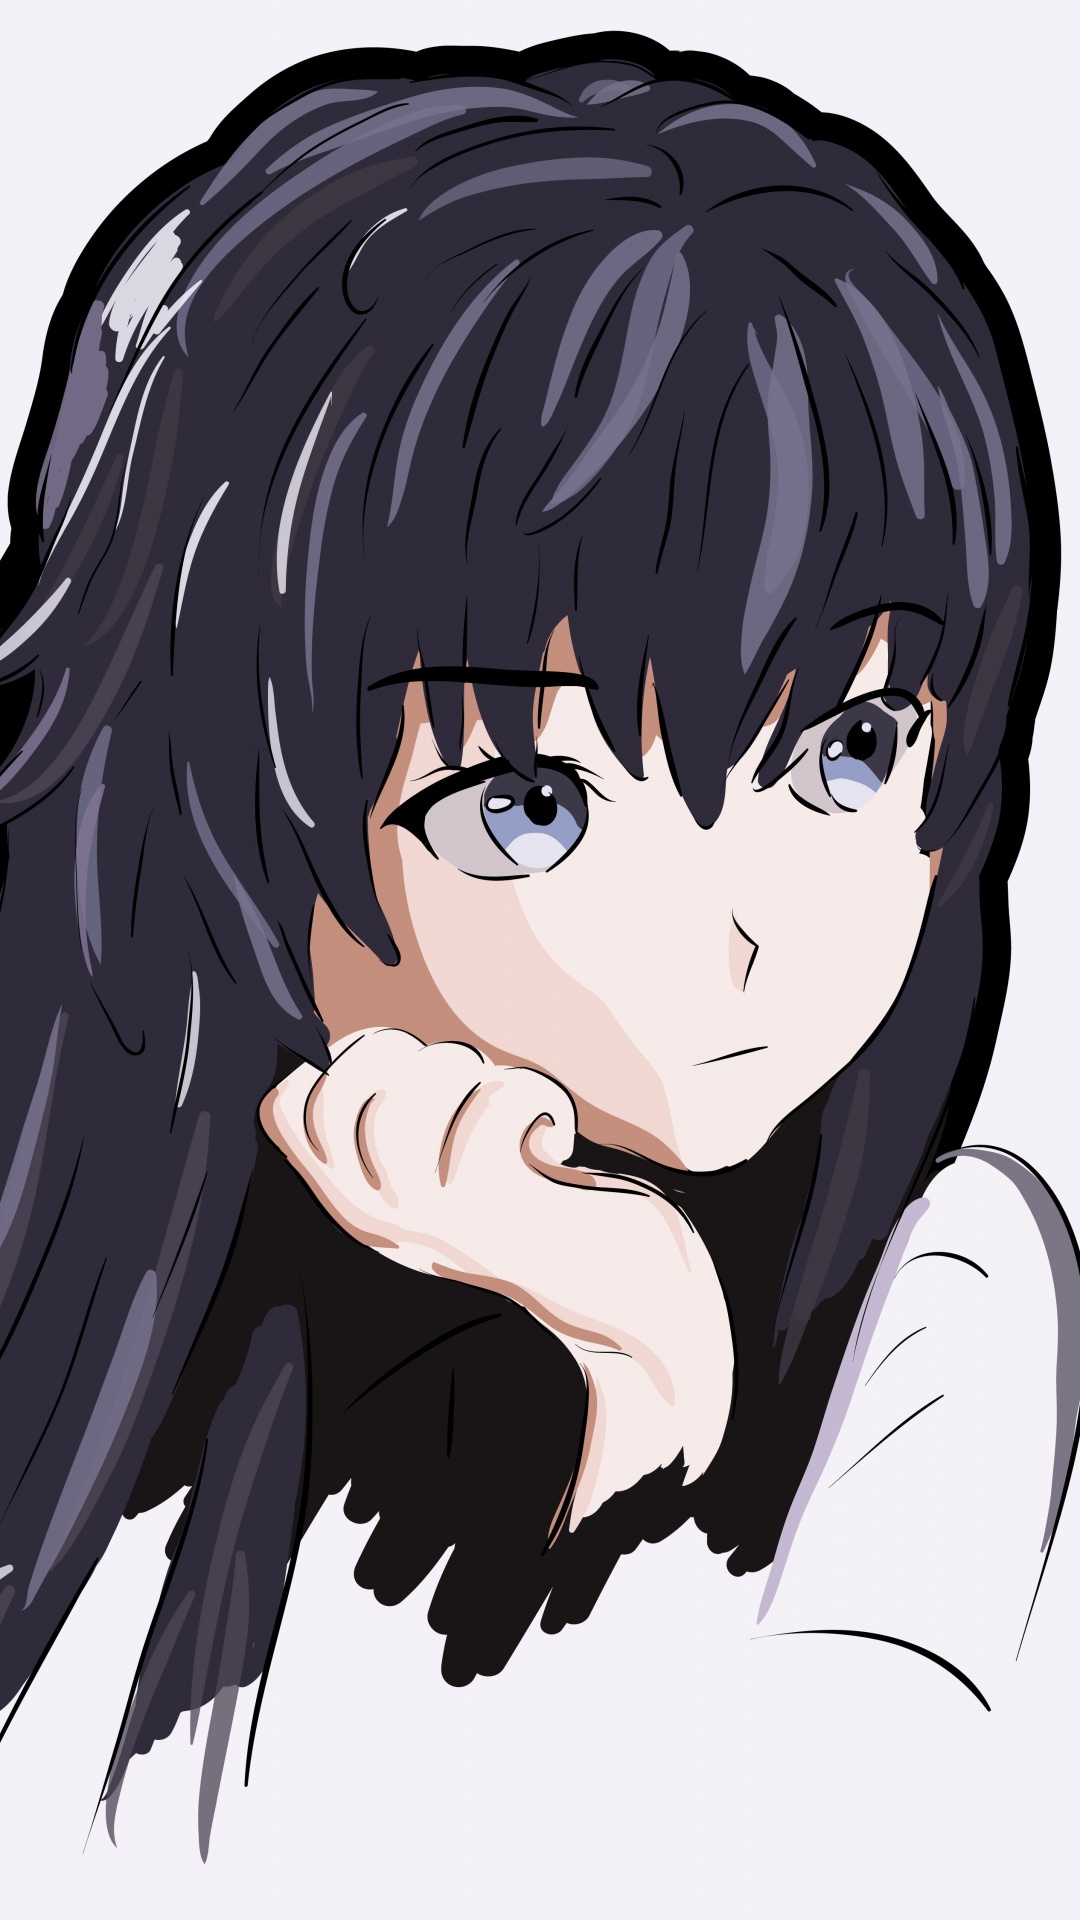 Personaje de Anime Masculino de Pelo Negro. Wallpaper in 1080x1920 Resolution